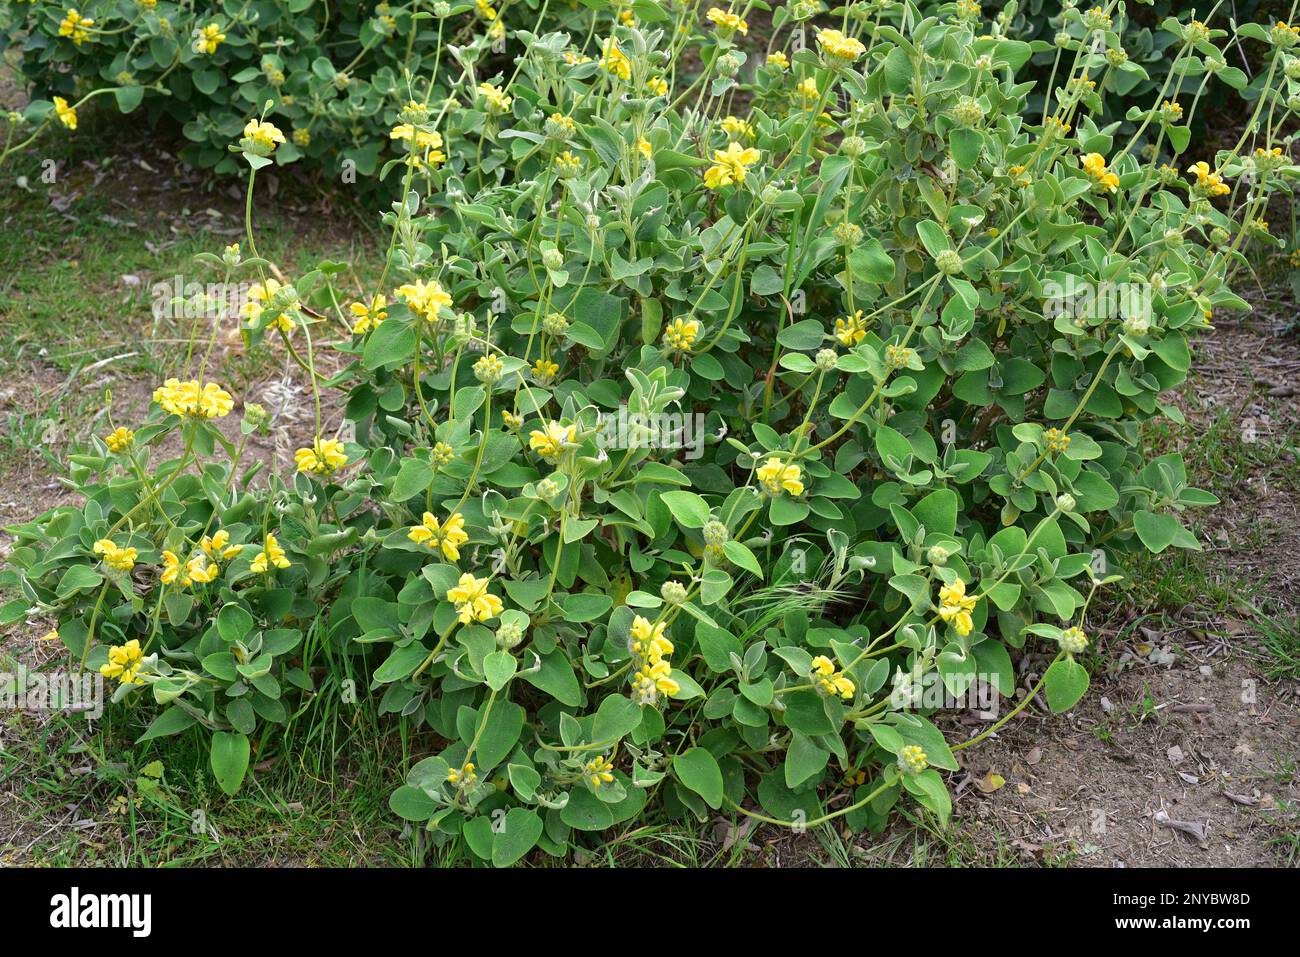 Der goldblättrige Jerusalem-Salbei (Phlomis chrysophylla) ist ein immergrüner Strauch aus Südwestasien. Blütenpflanze. Stockfoto